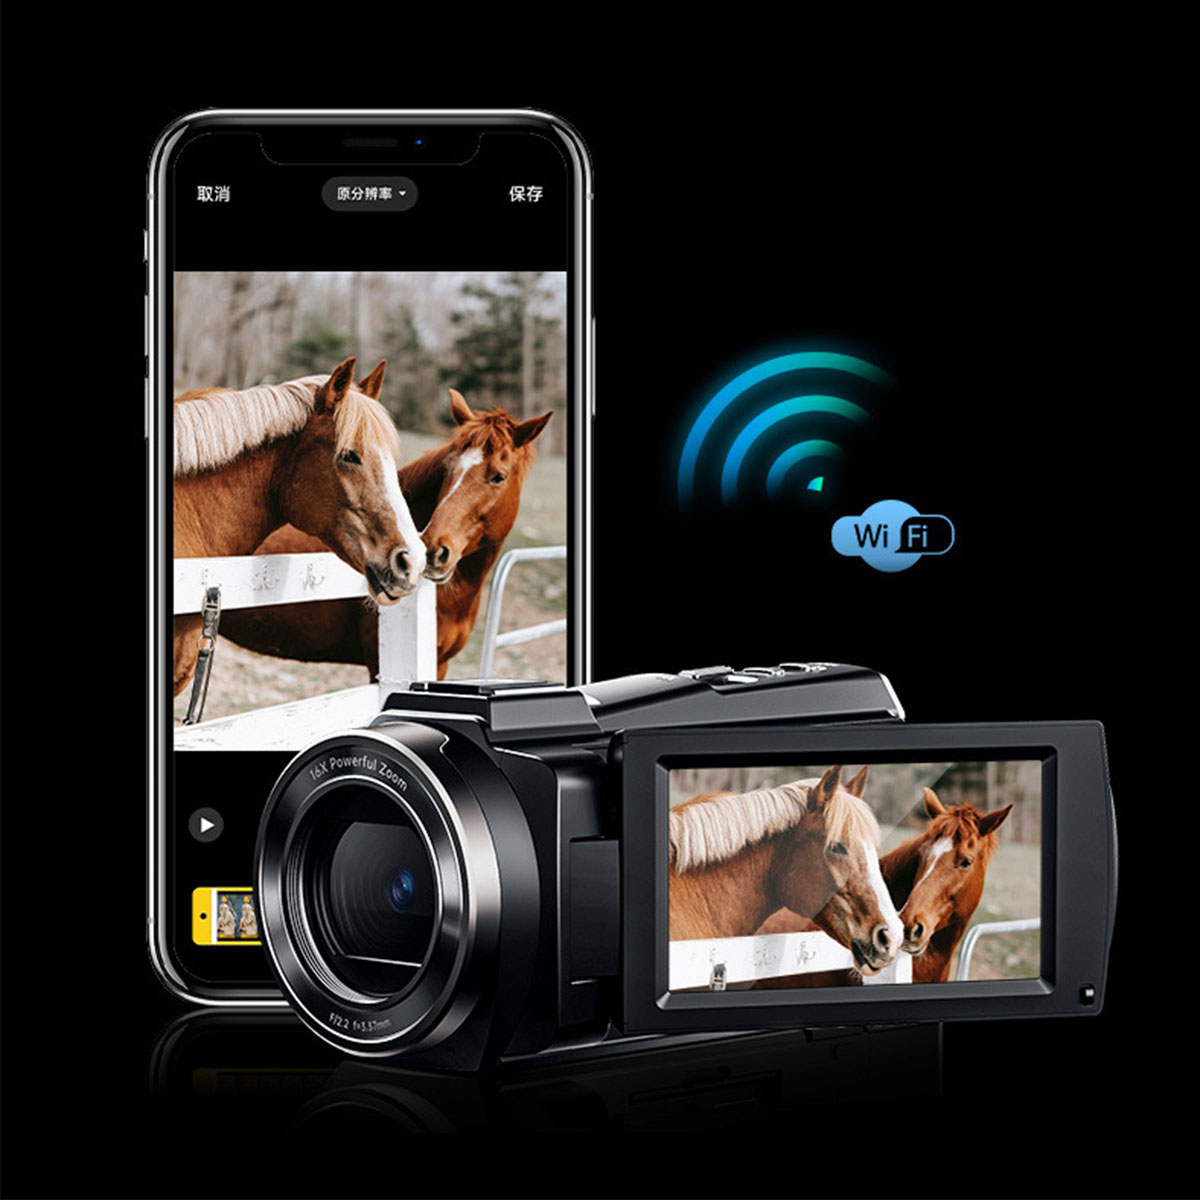 BRIGHTAKE 5K Outdoor Digitalkamera Akkulaufzeit, Shot DV Kamera Schwarz- mit und langer WiFi Night 48 MP